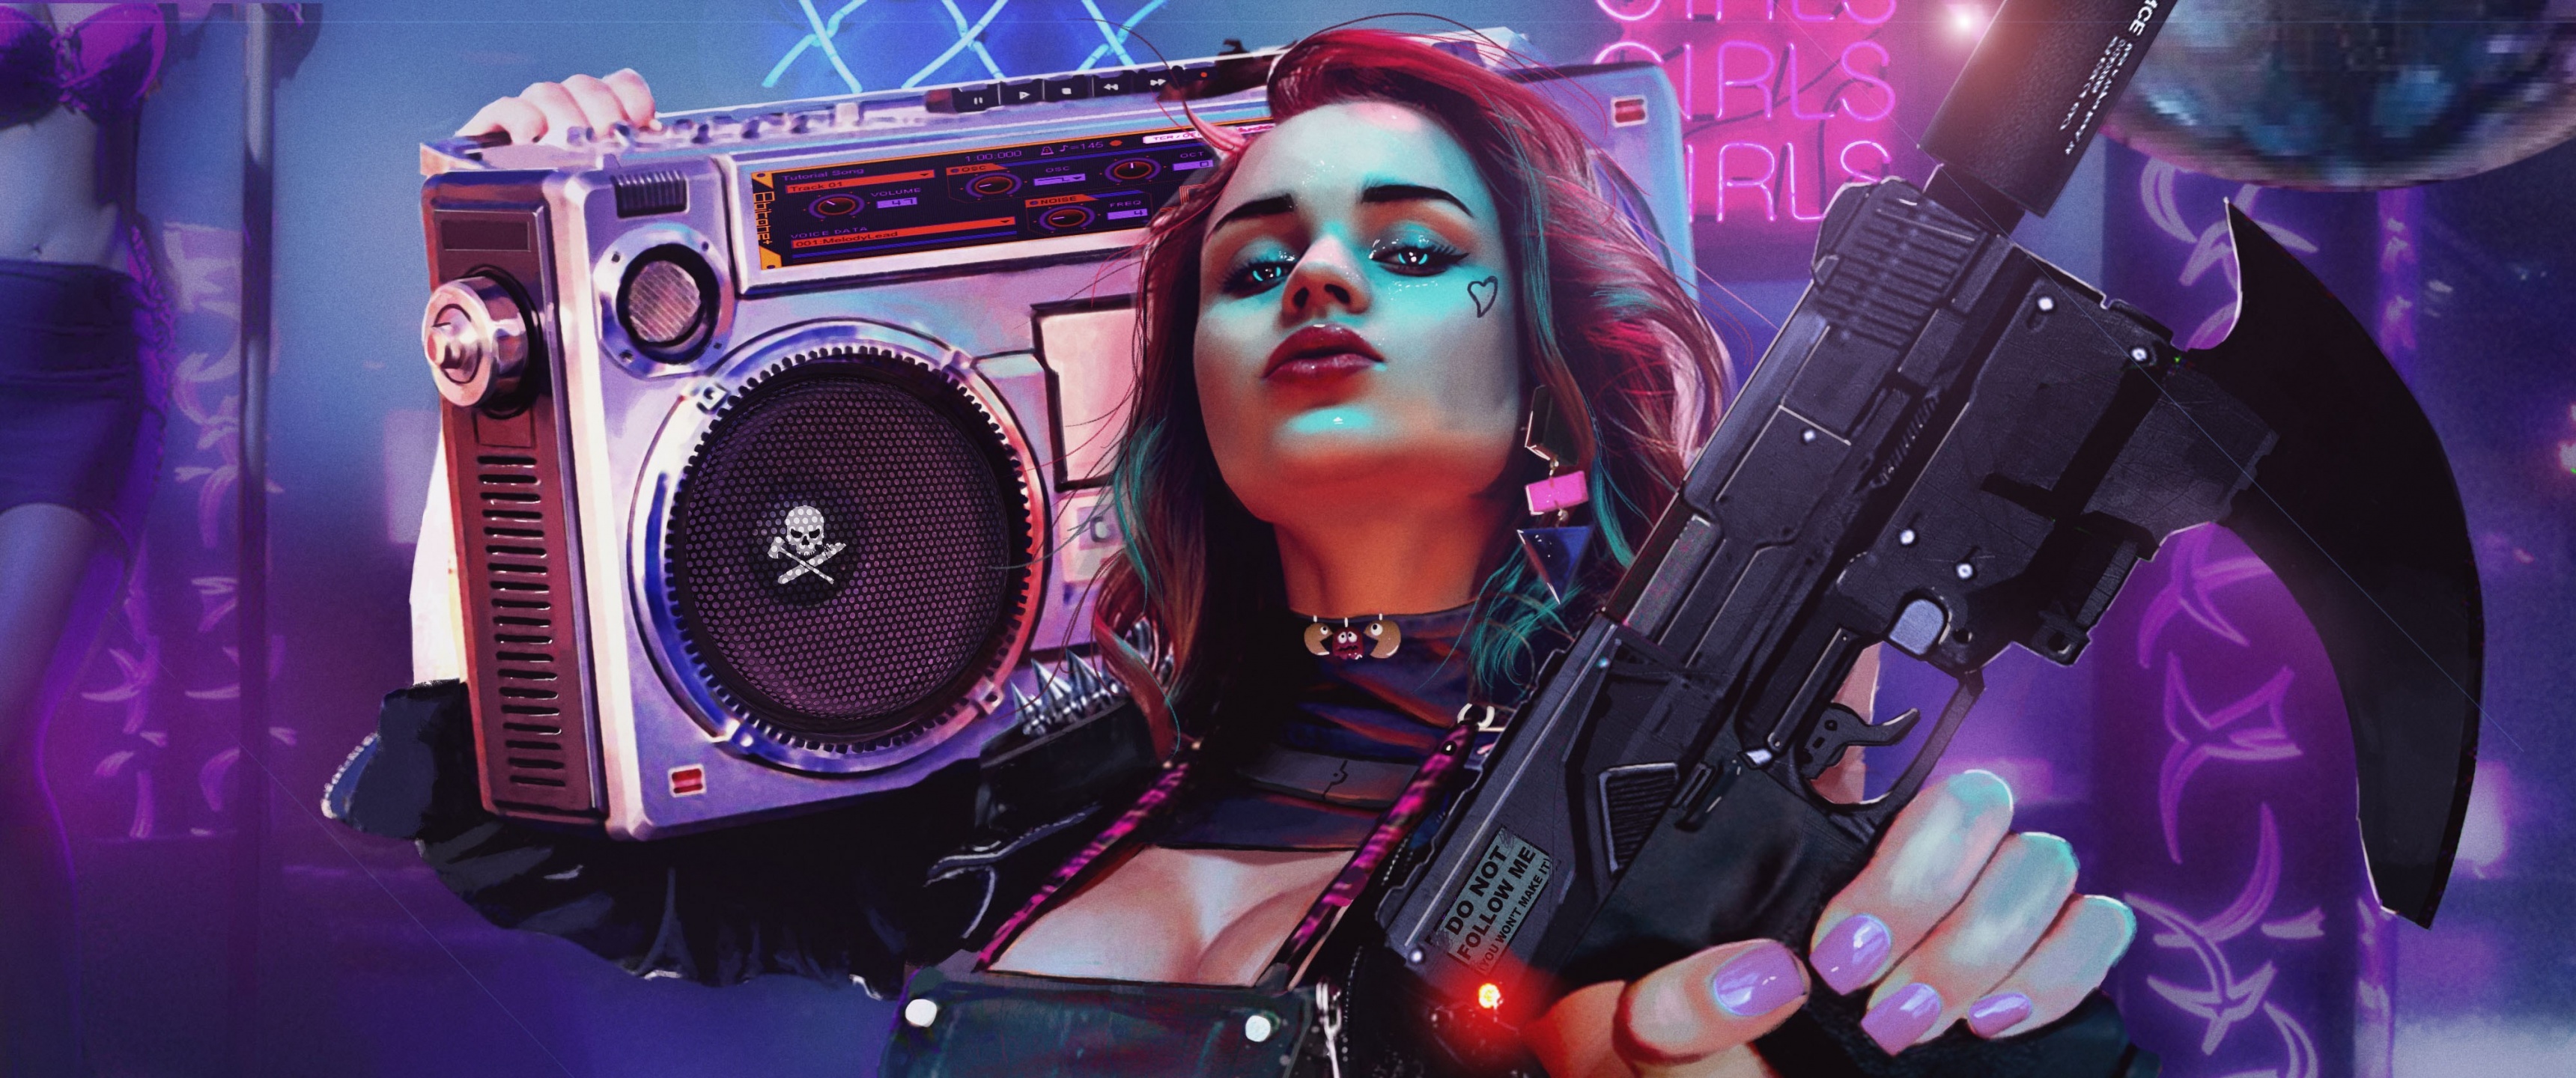 Cyberpunk girl Wallpaper 4K, 2020 Games, Games